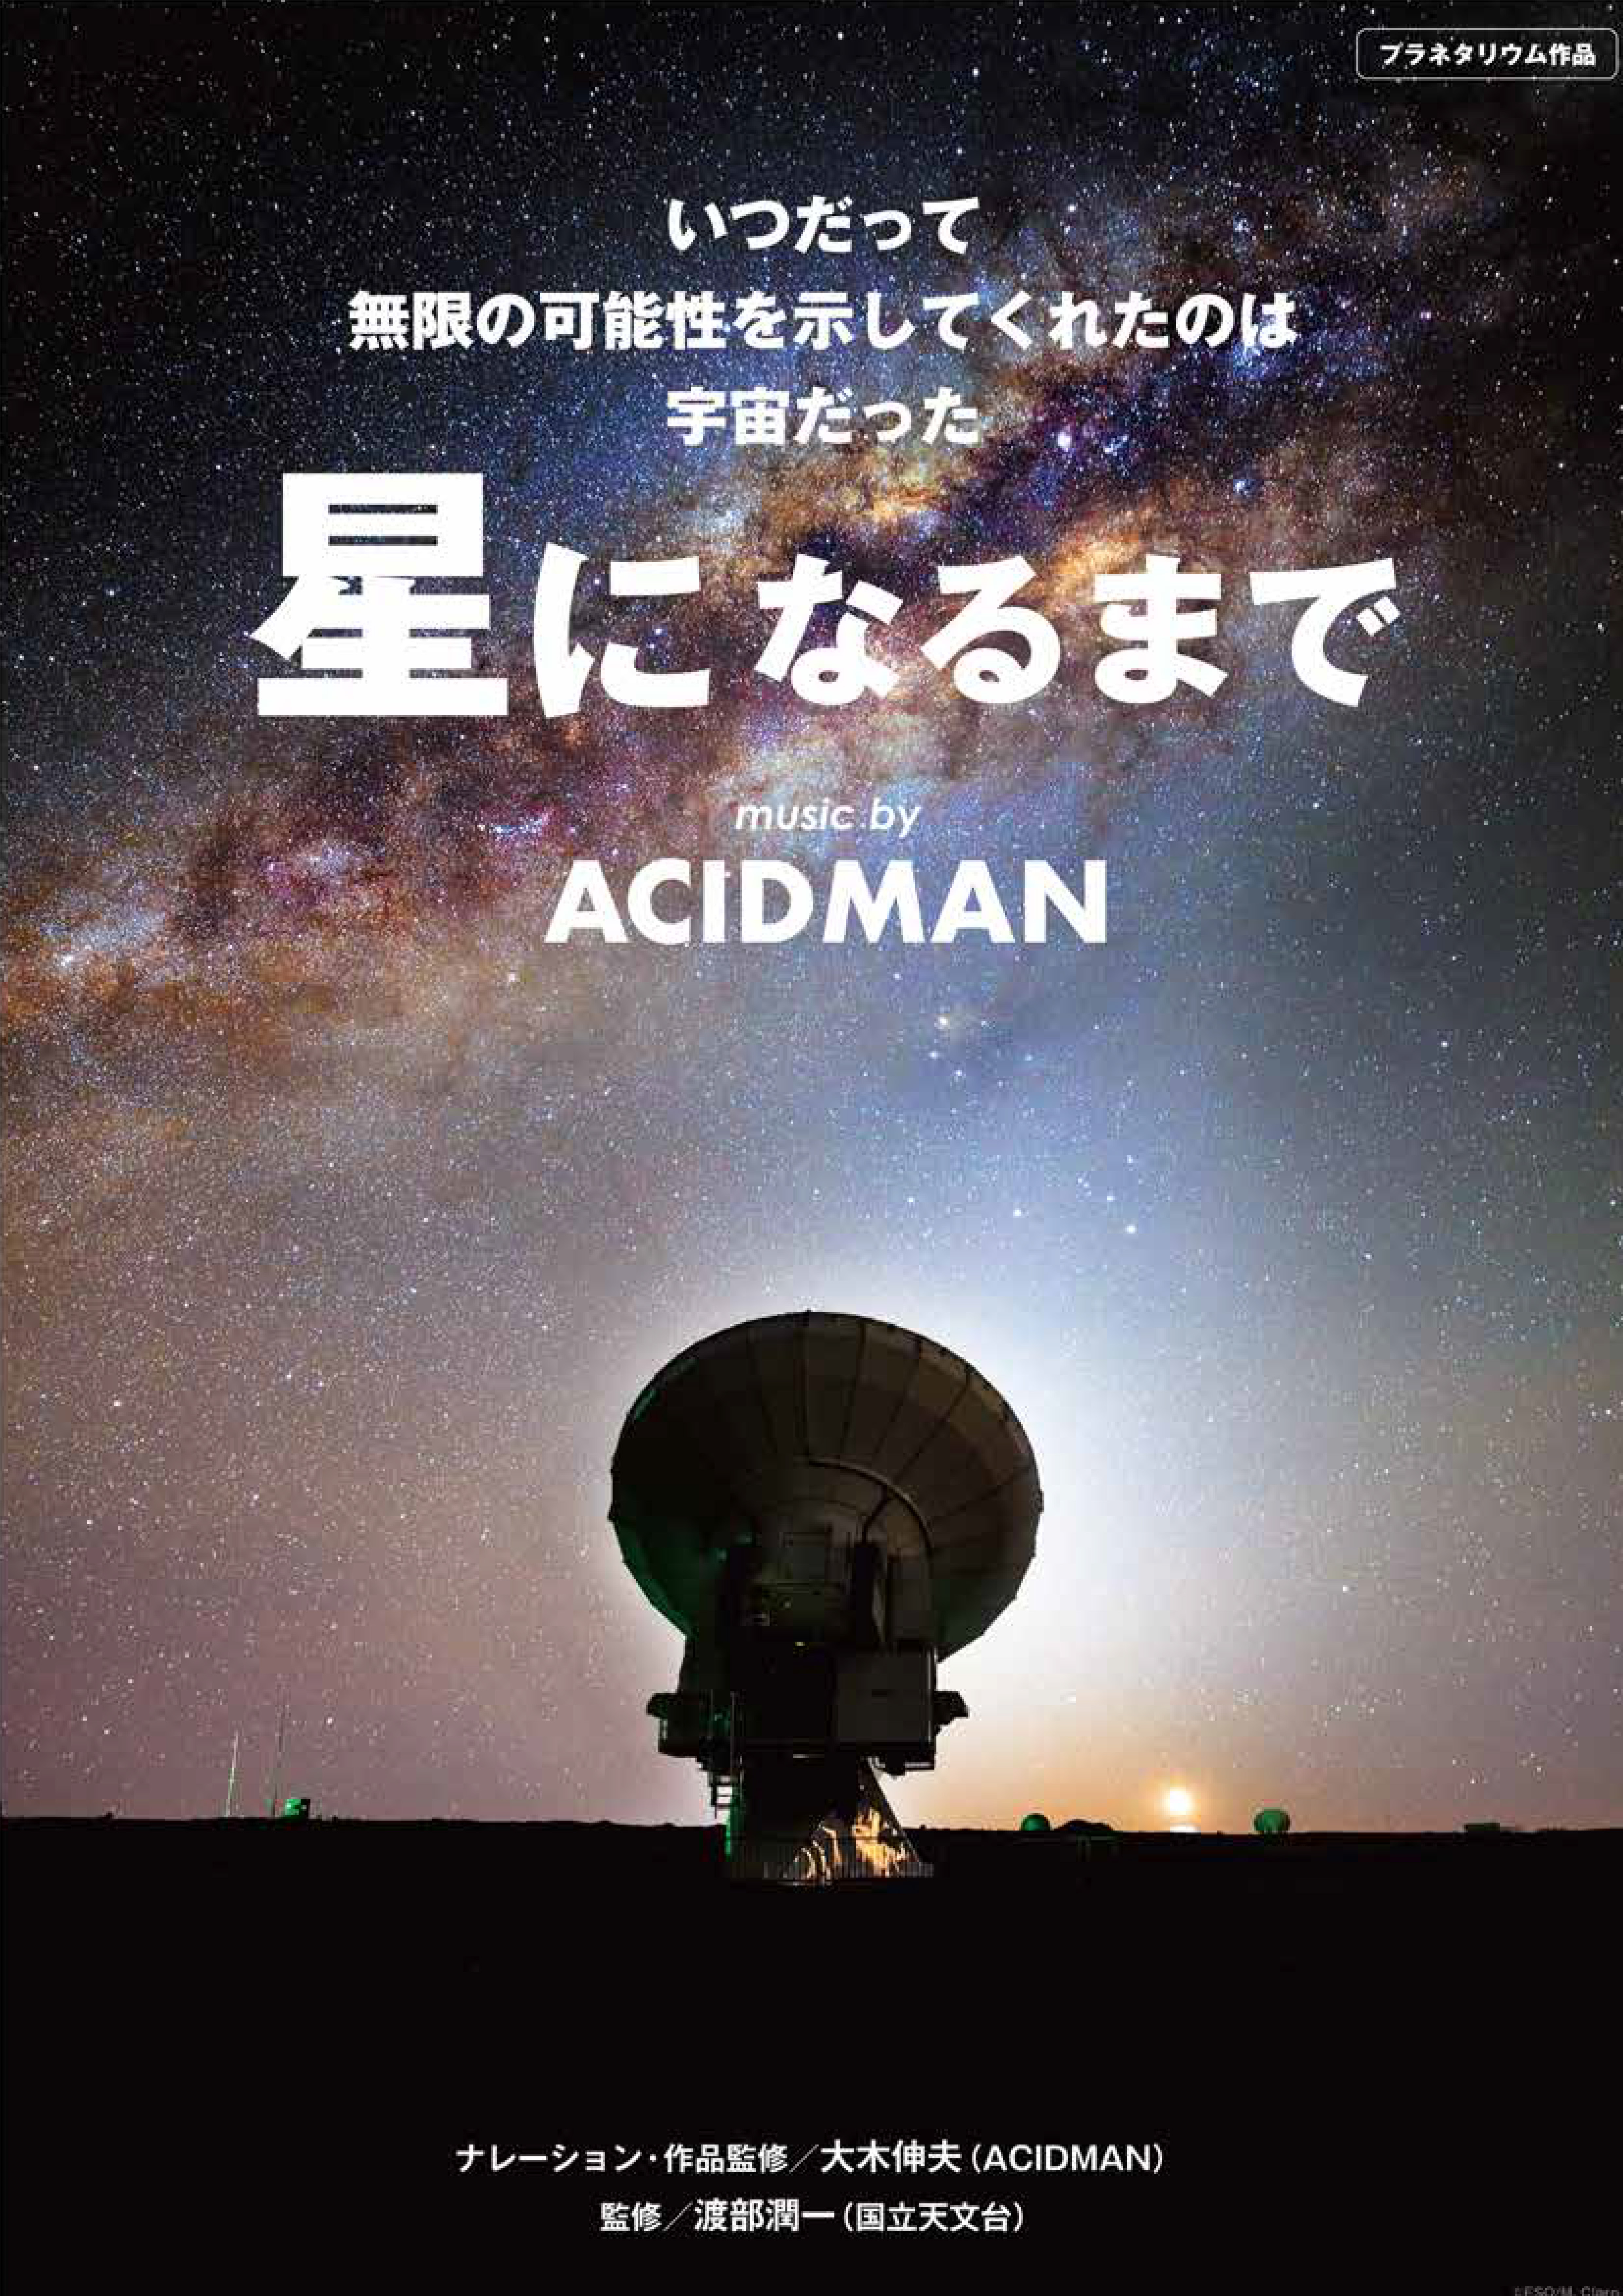 星になるまで～ music by ACIDMAN～